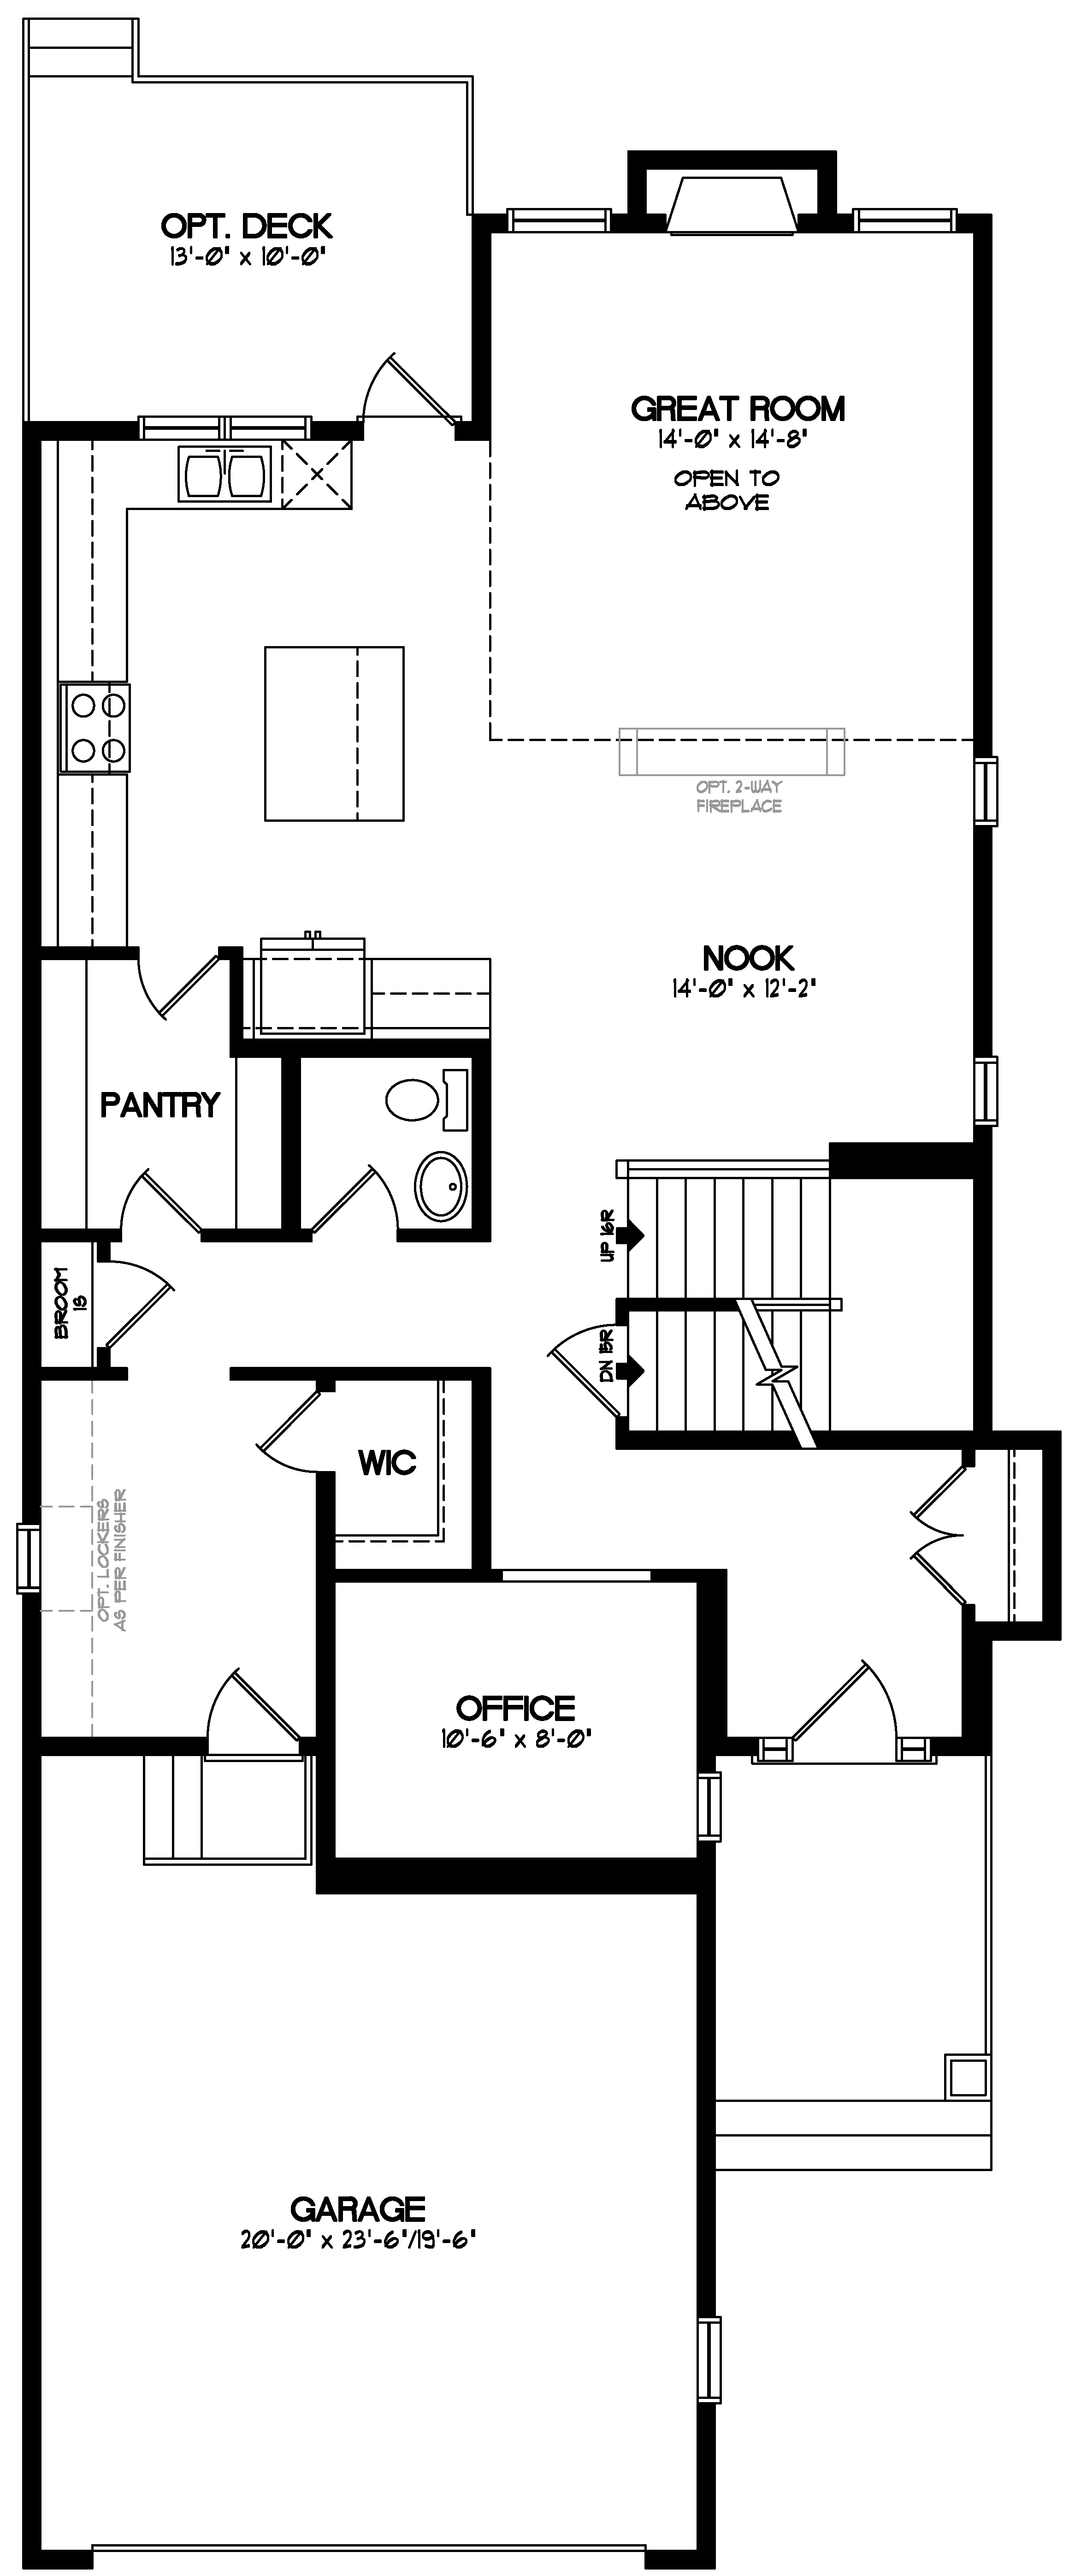 Leighton Home Model Floor Plans